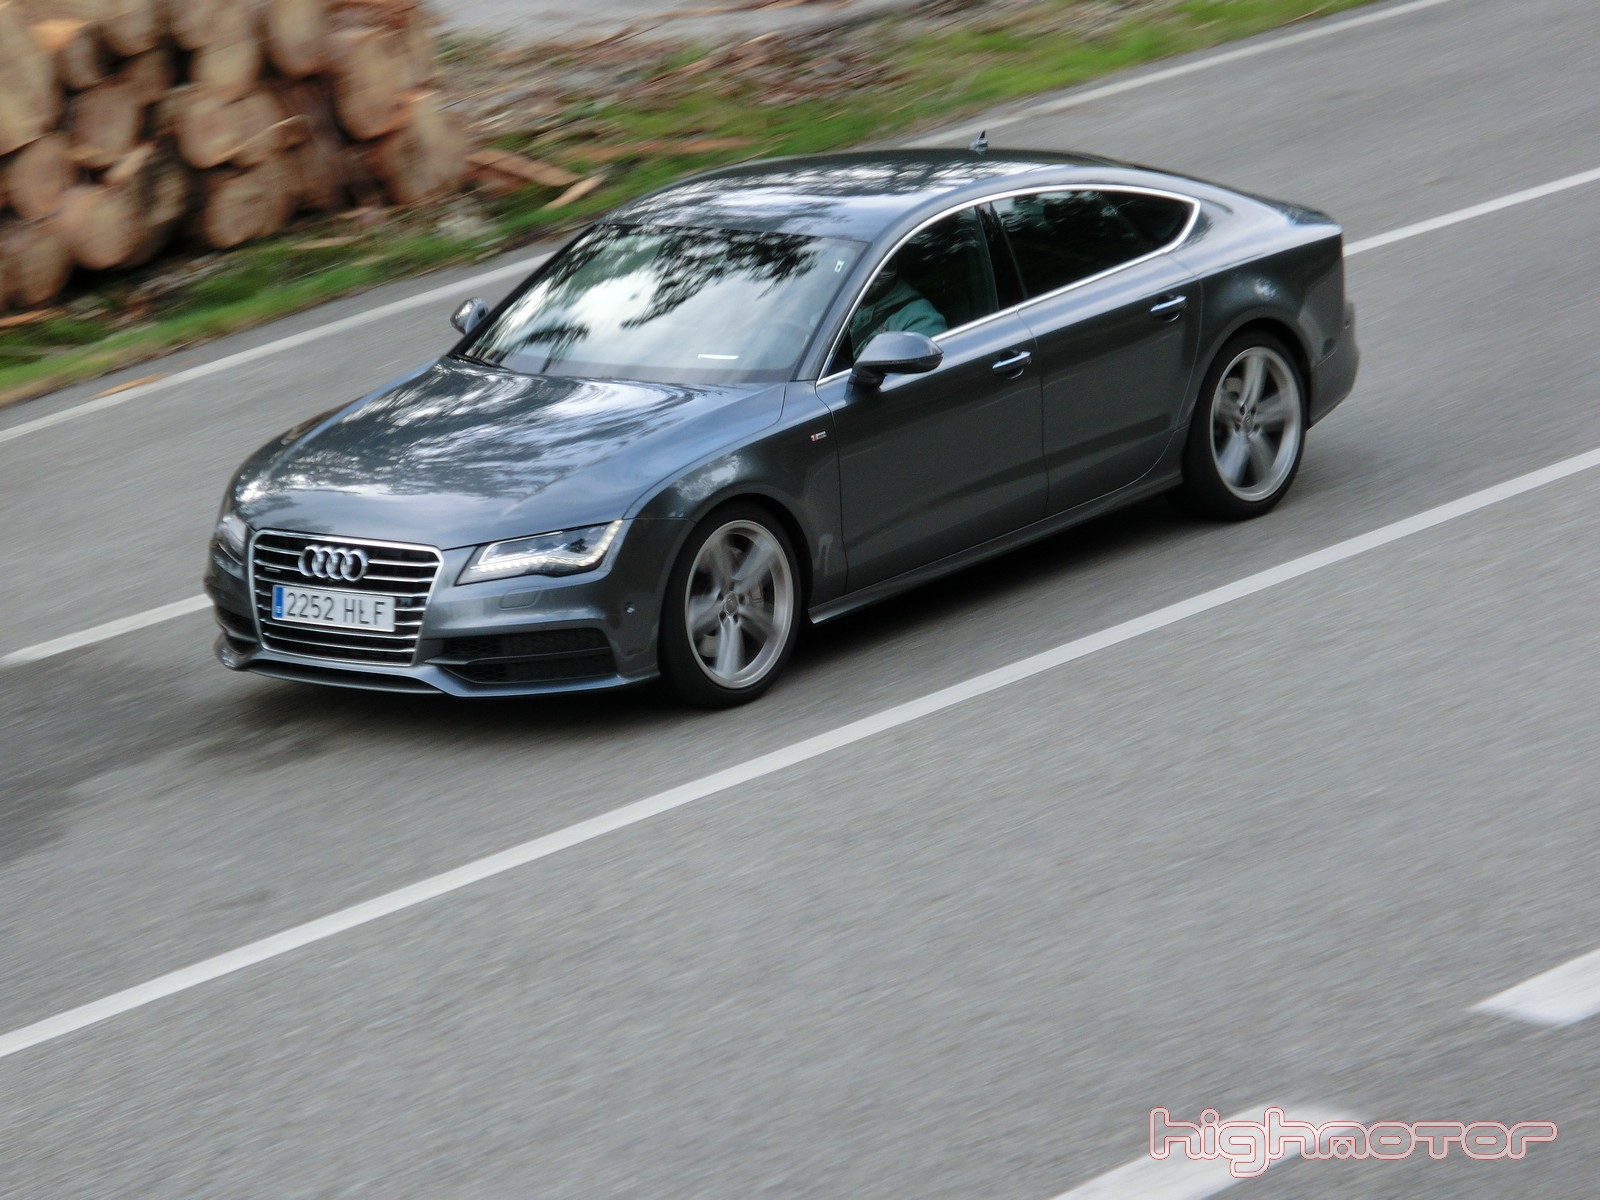 Audi A7 3.0 V6 TDI BiTurbo 313 CV, prueba (Equipamiento, precios y valoración)